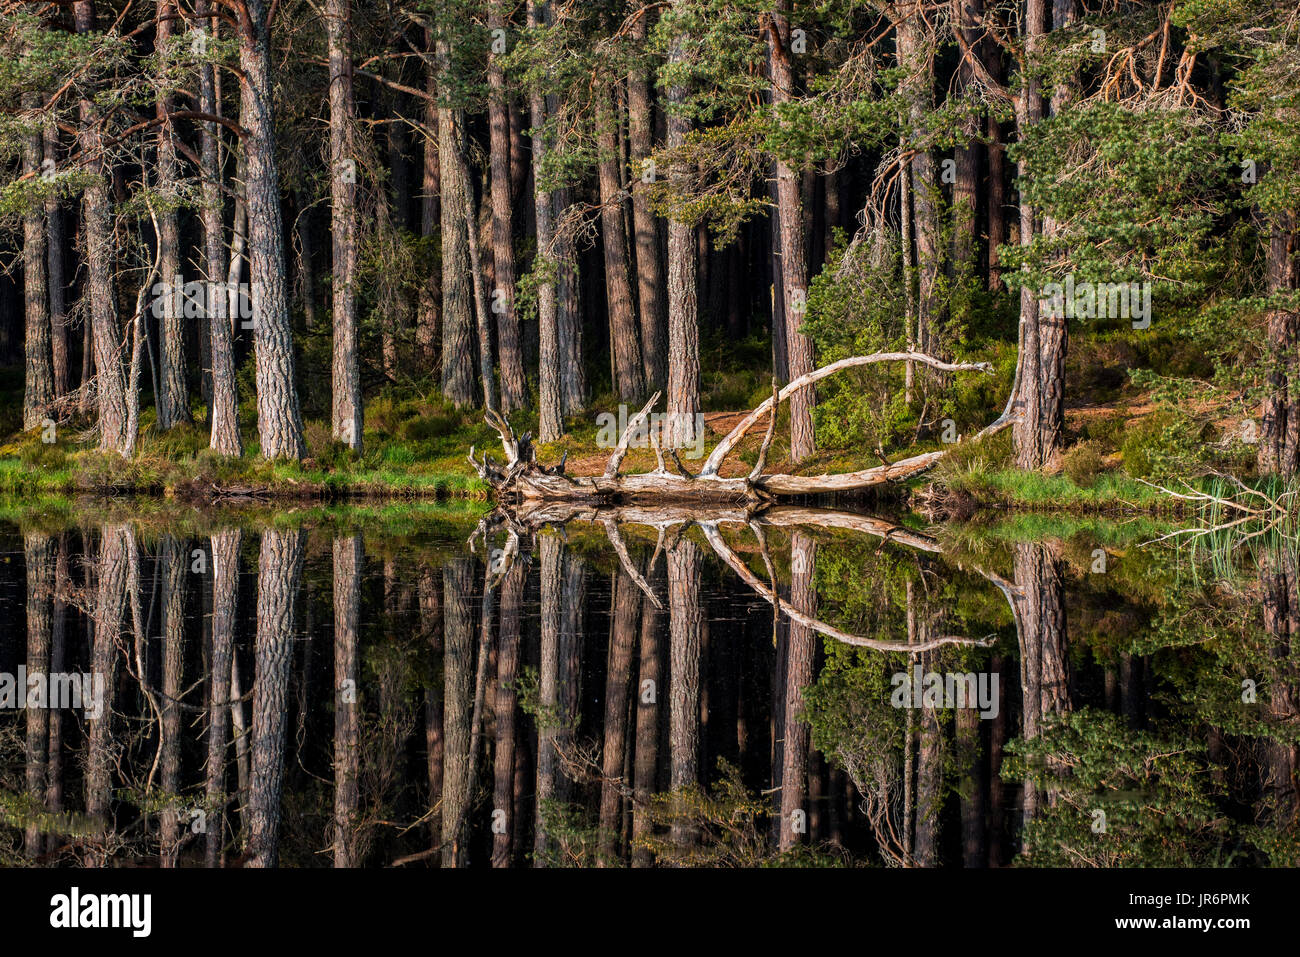 Le pin d'arbres sur les rives du Loch Garten, reflétée dans l'eau, de la forêt d'Abernethy, vestige de la forêt écossaise dans Strathspey, Ecosse, Royaume-Uni Banque D'Images